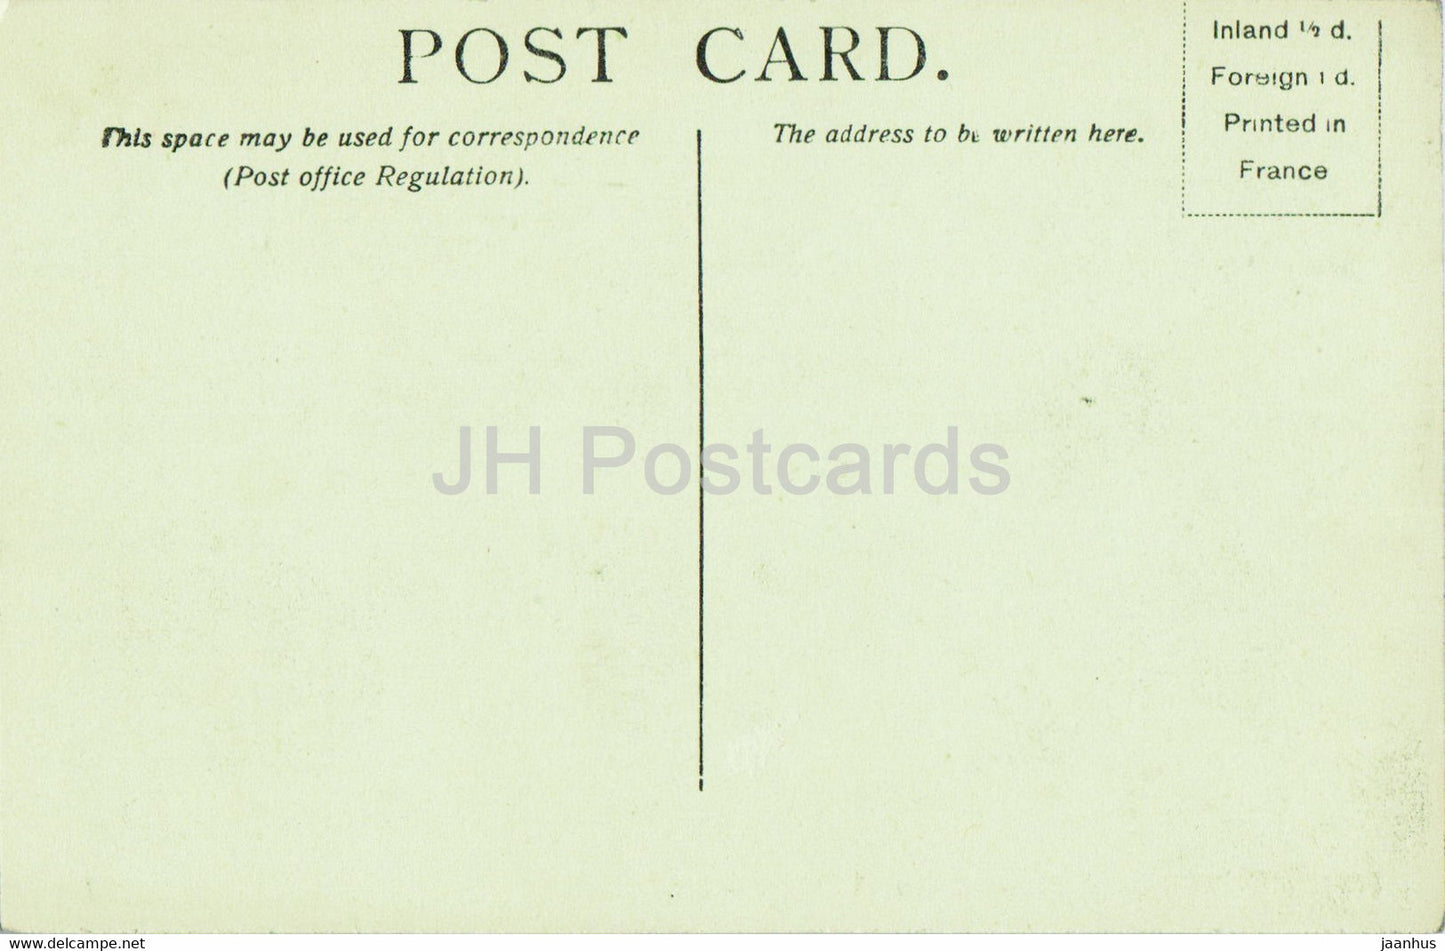 Windsor Castle - St. George's Chapel - 922 - alte Postkarte - England - Vereinigtes Königreich - unbenutzt